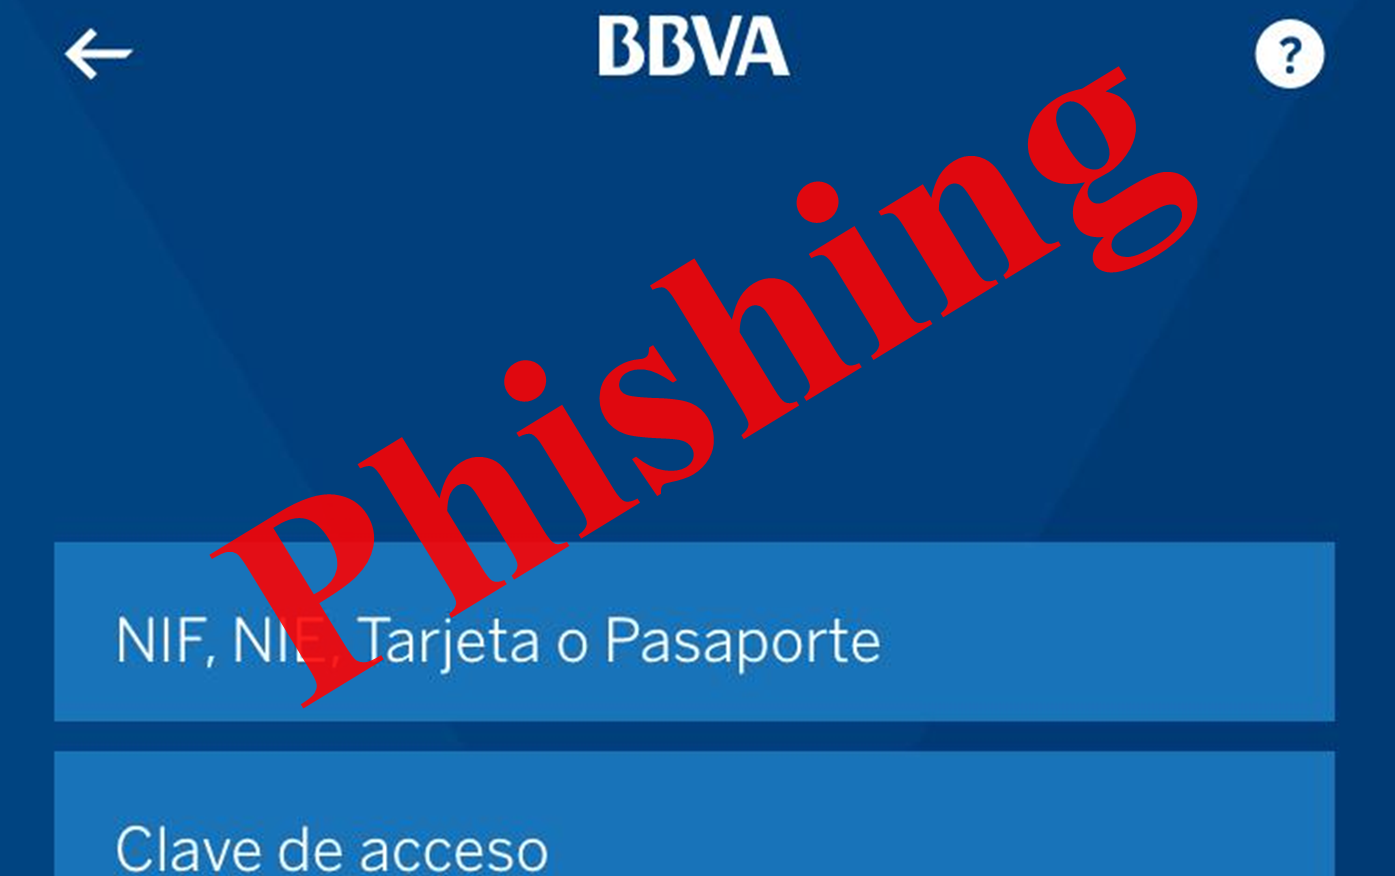 El intento de fraude a clientes del BBVA busca suplantar la web de la entidad financiera (Foto: www.osi.es).